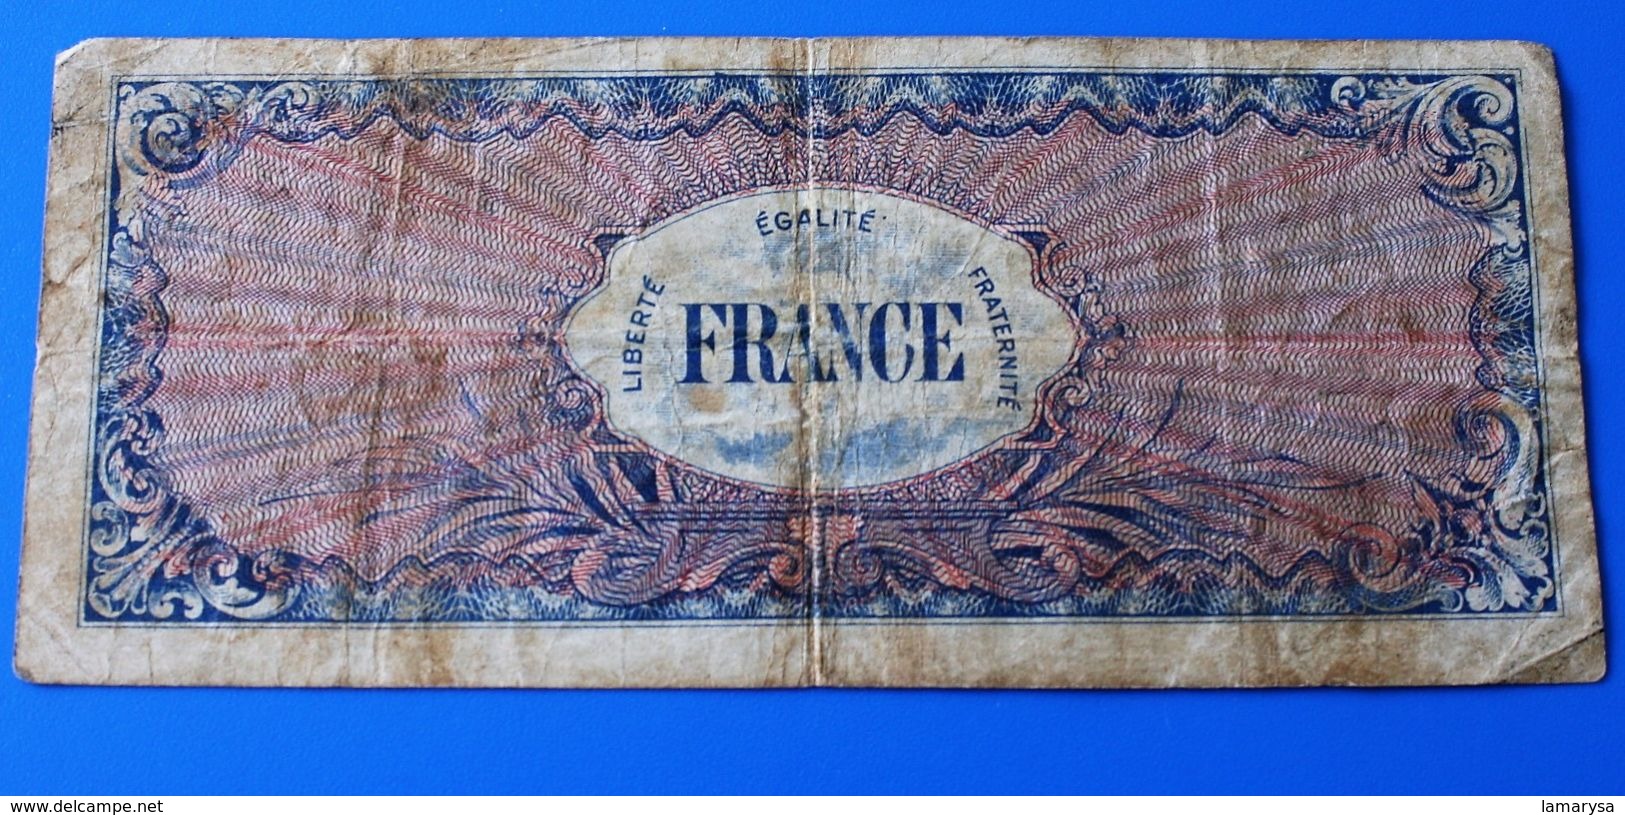 Billet De 100 Francs -1944 Allied Military Currency.France En Lettre Avec Devise Du Pays “Liberté Egalité Fraternité” - 1944 Flag/France